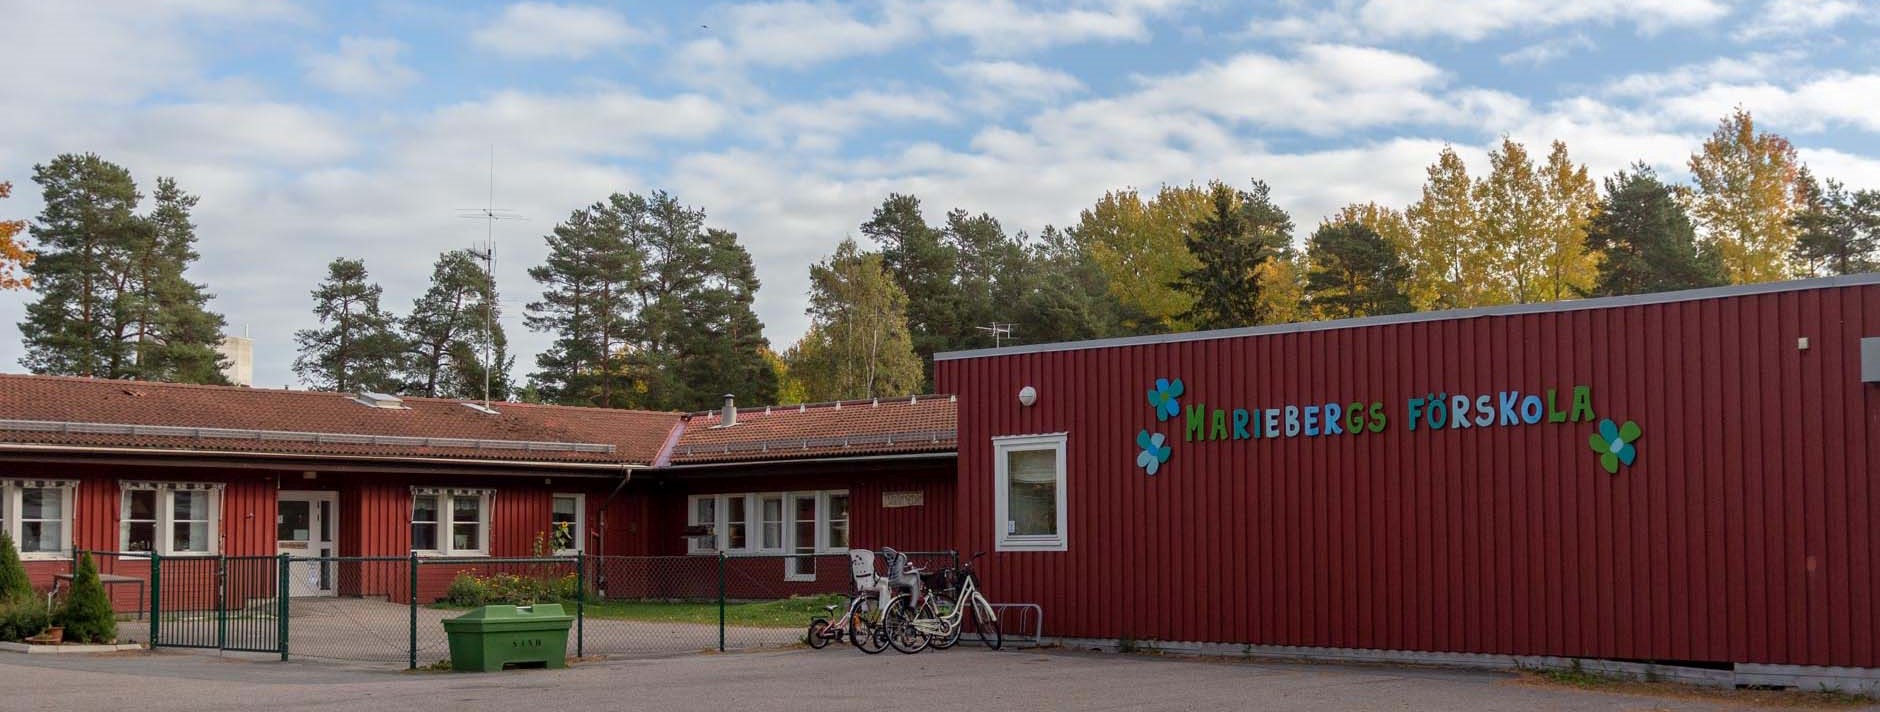 2018-10-10 Mariebergs förskola 001 WEB LÅG.jpg